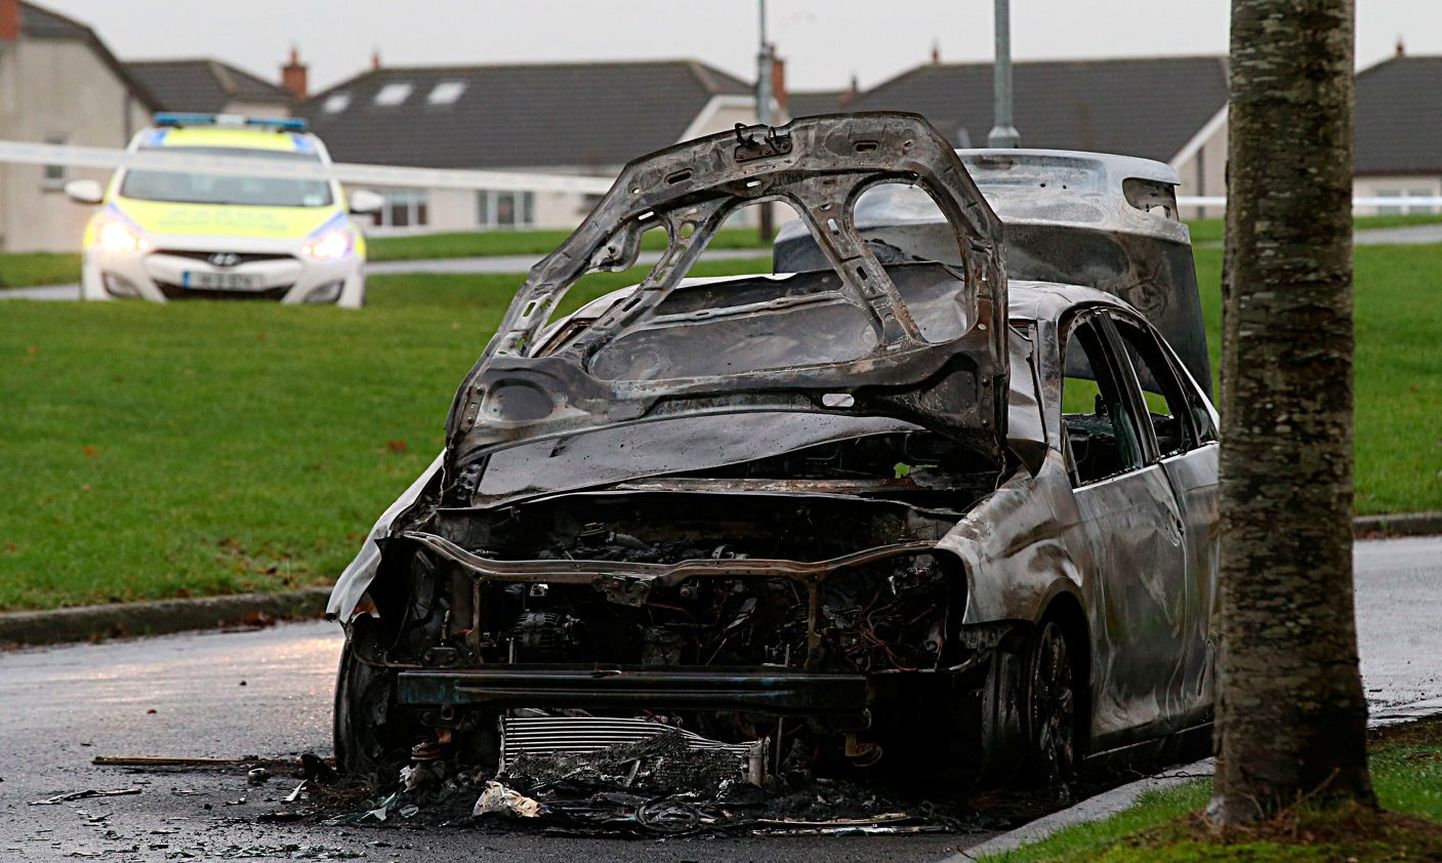 Преступники скрылись на автомобиле Volkswagen Jetta, который позже был сожжен.